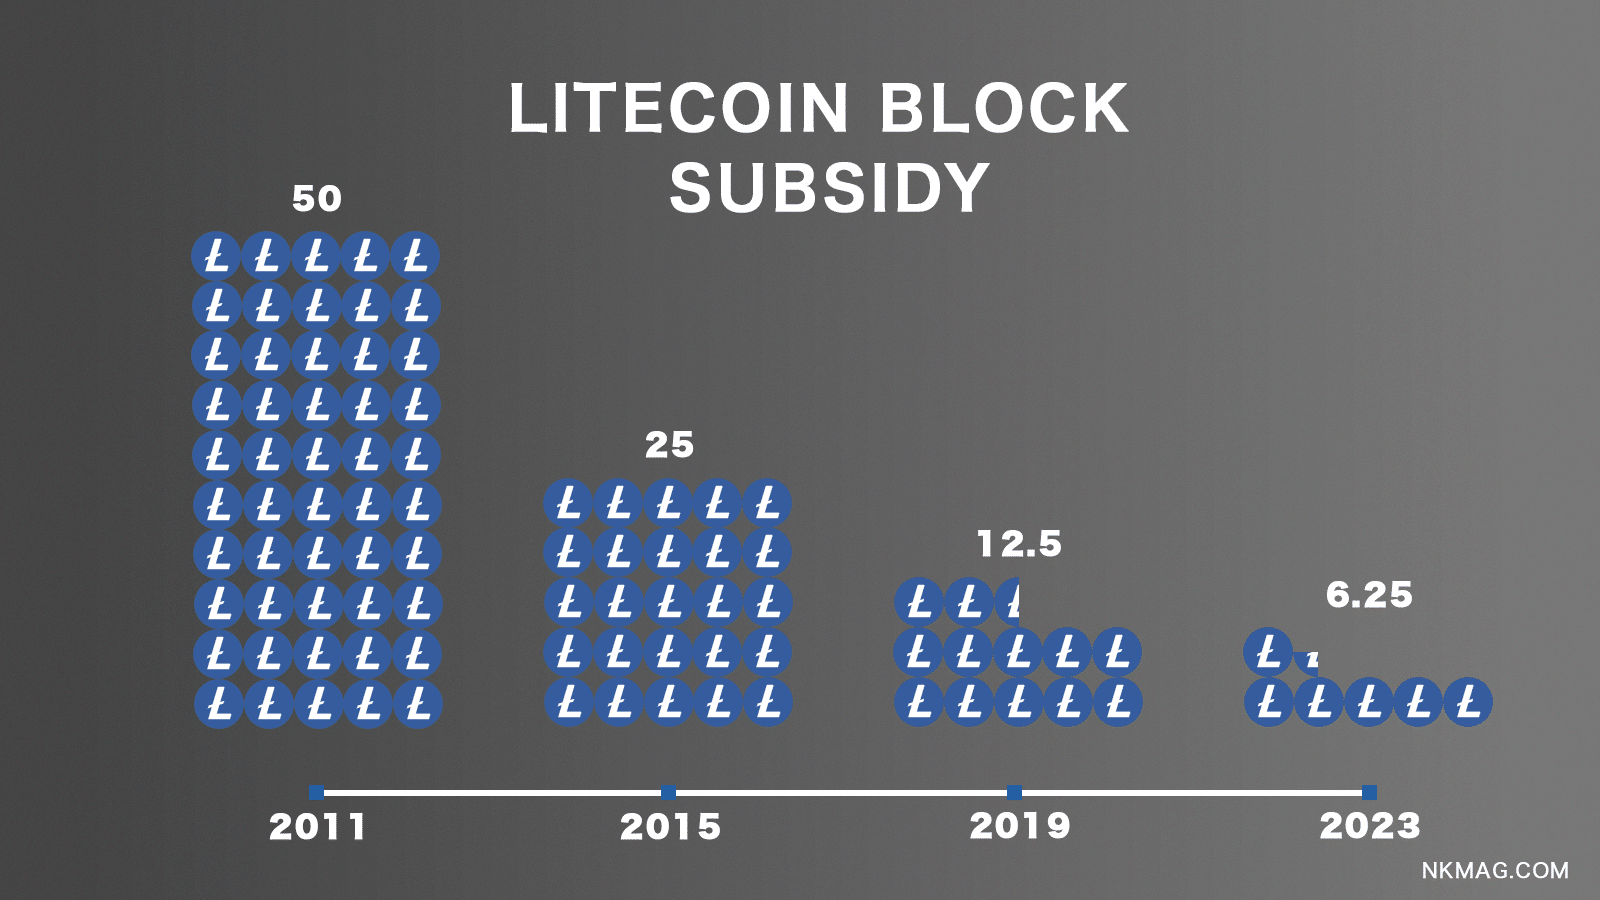 Litecoin-Blockbelohnungen oder Subventionen sind der Anreiz für Miner, die ihre Rechenressourcen einsetzen, um Transaktionen zu validieren und neue Blöcke zur Litecoin-Blockchain hinzuzufügen.